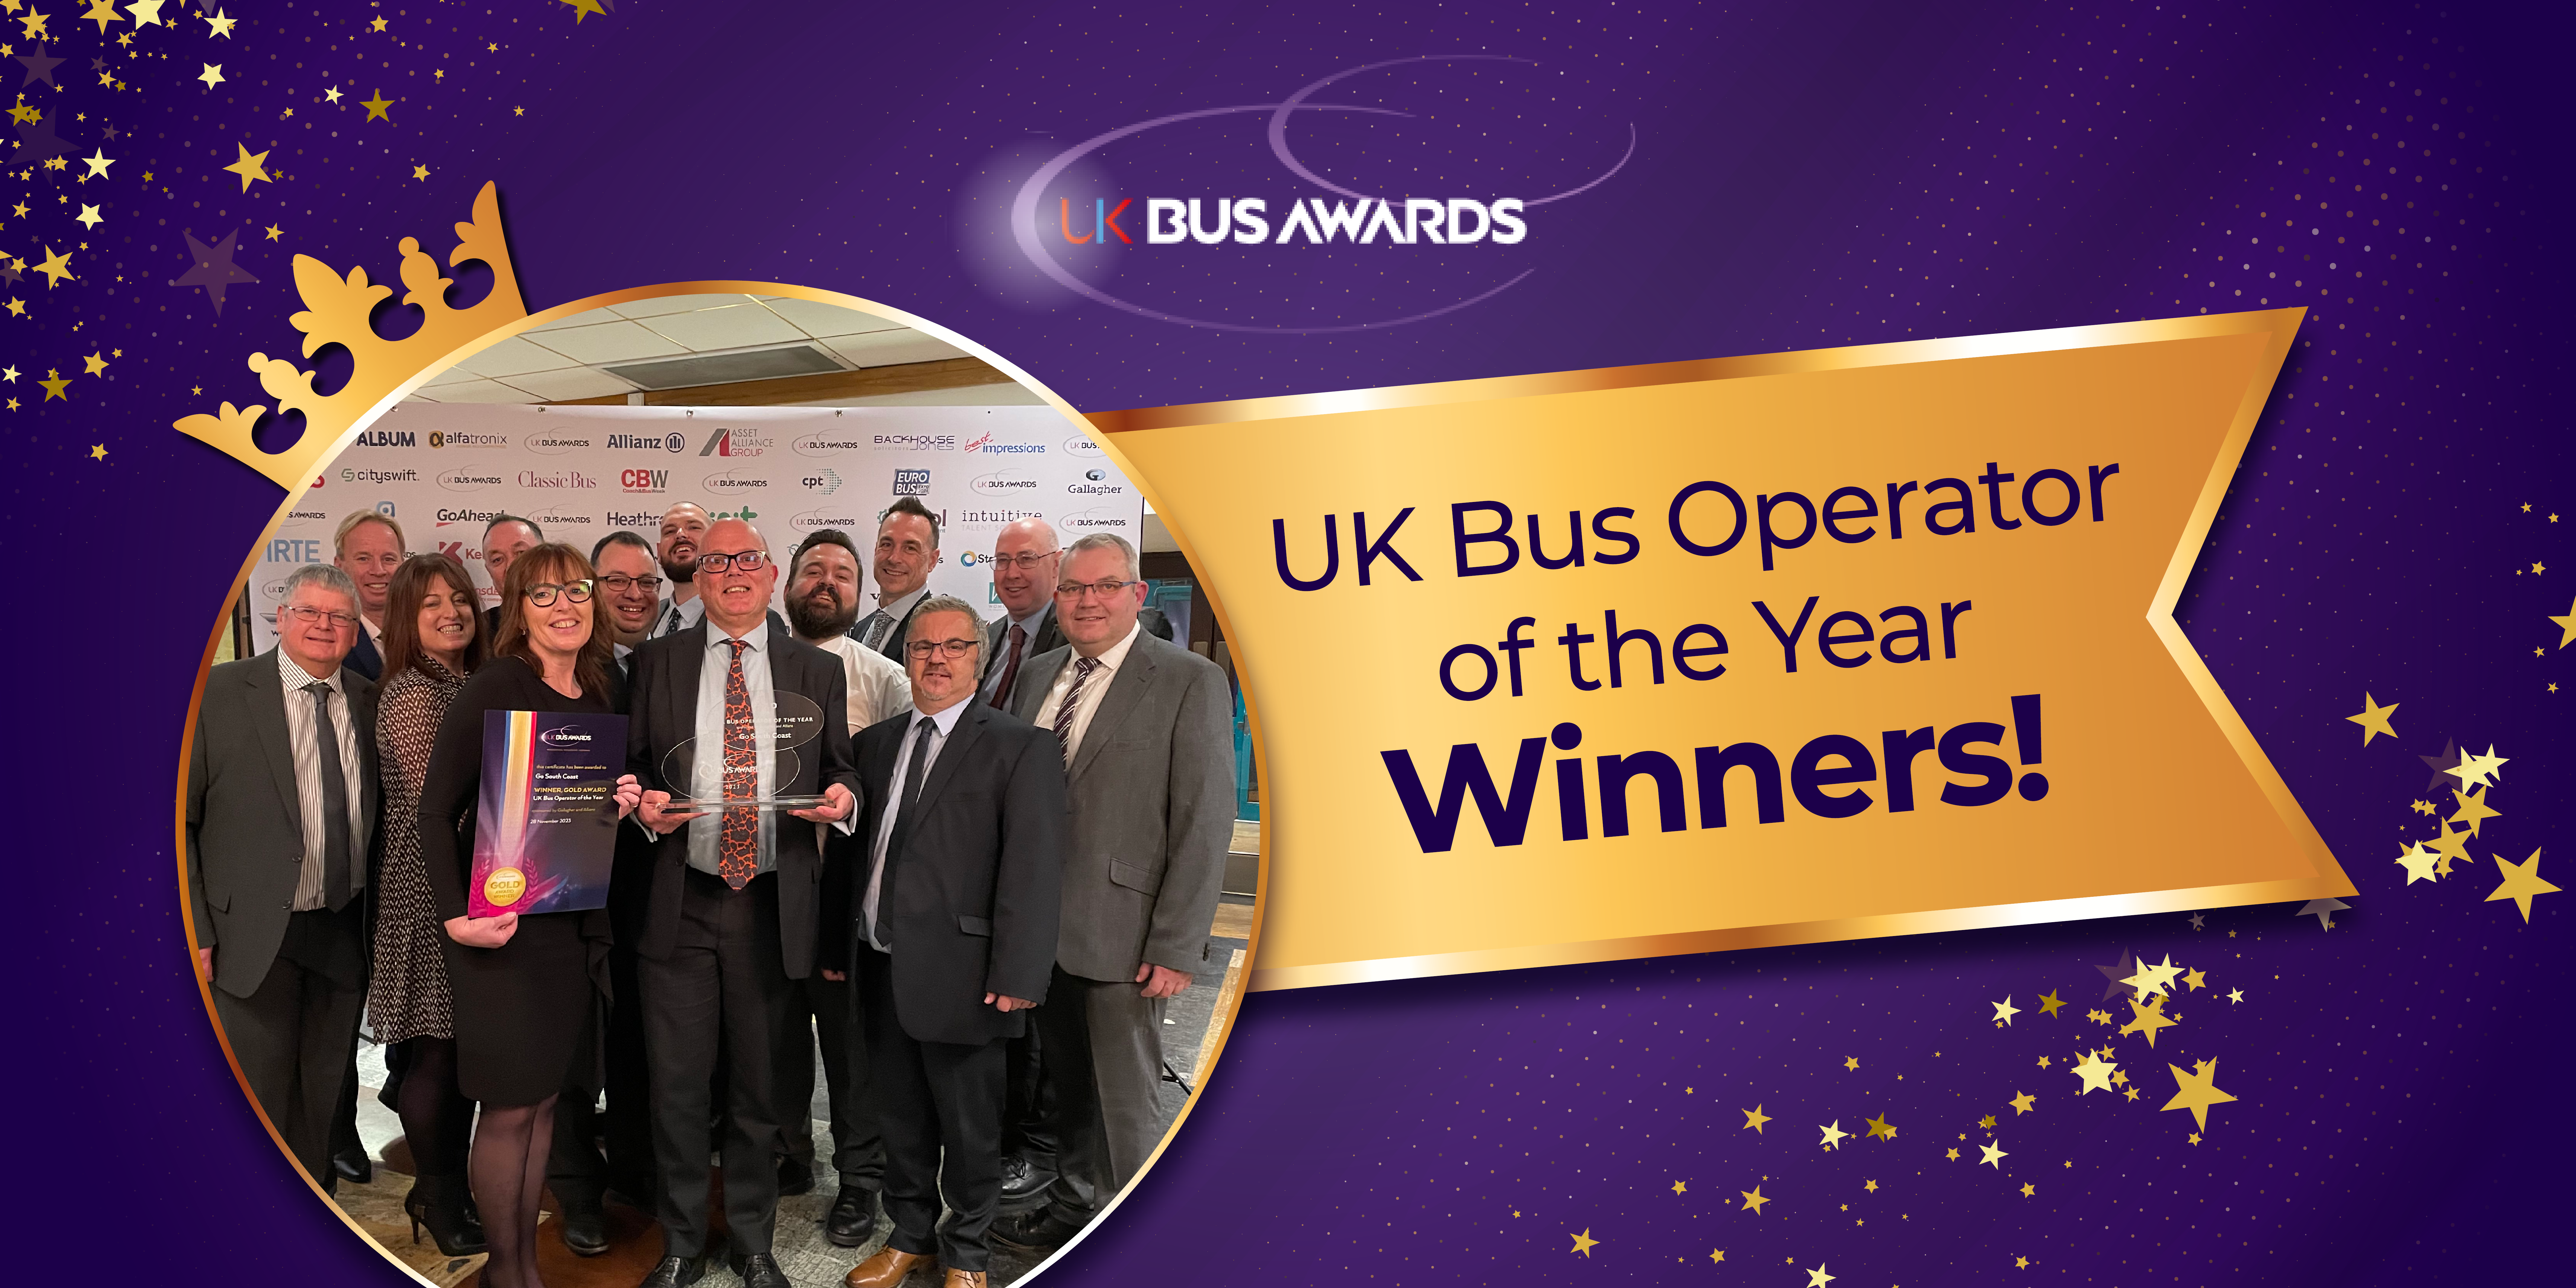 UK Bus Operator of the Year winners!